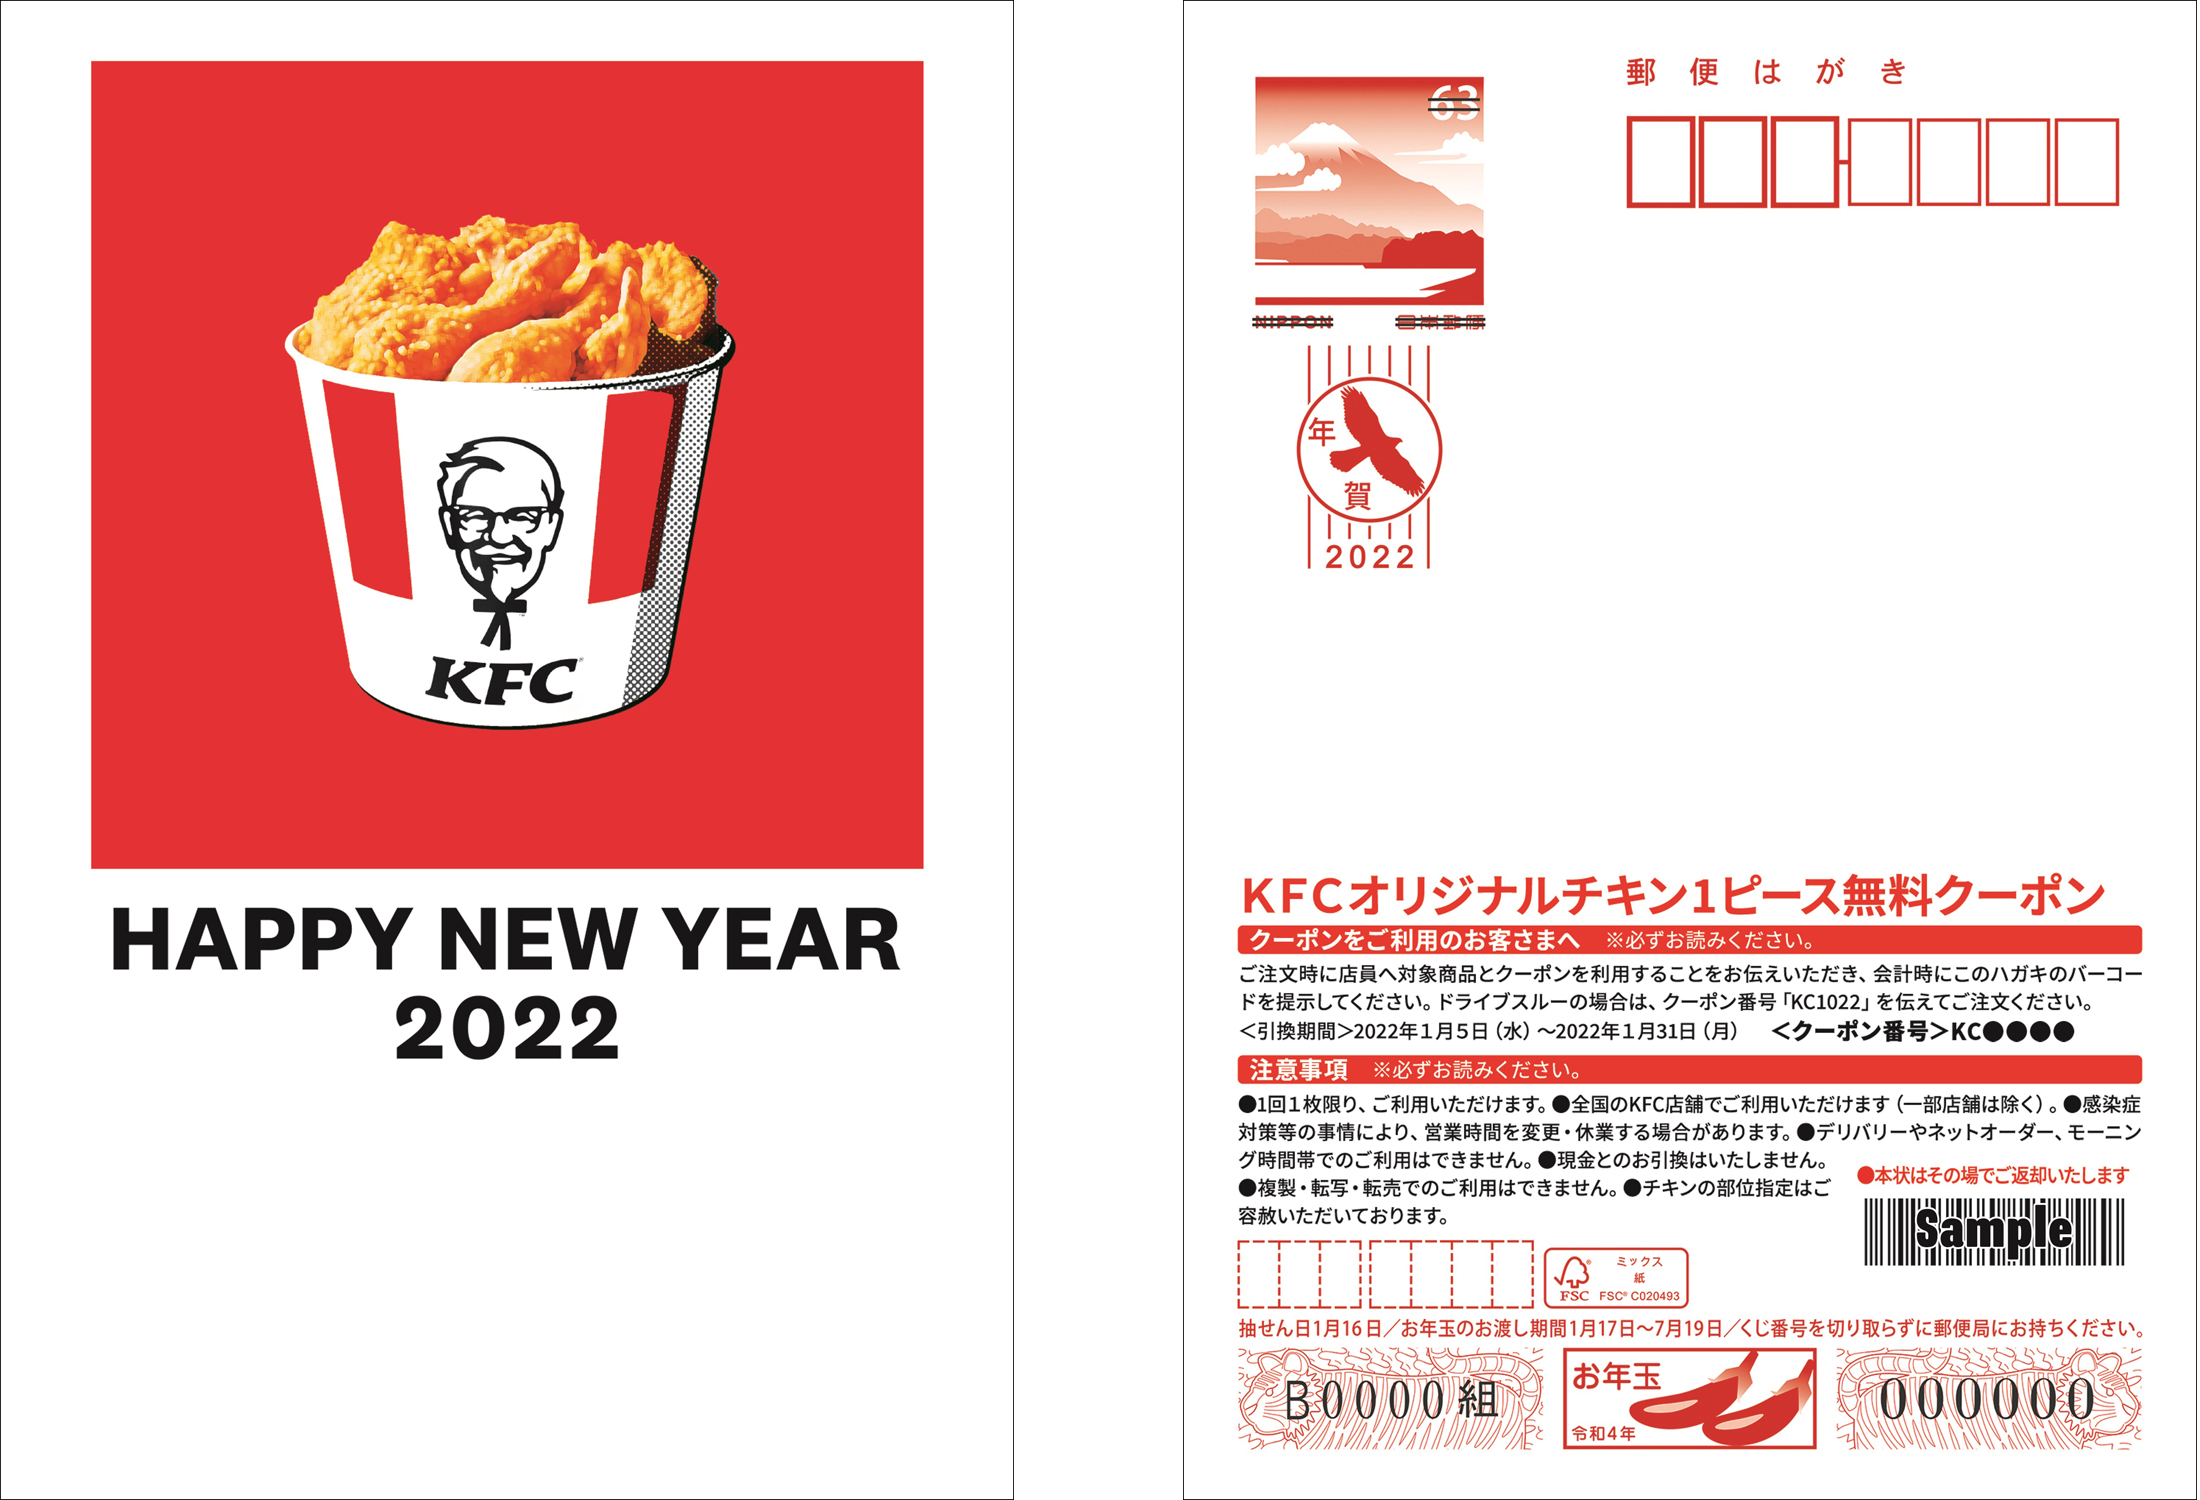 「ギフト付きKFCオリジナル年賀はがき」のデザインは2種類。同デザイン3枚セットが750円